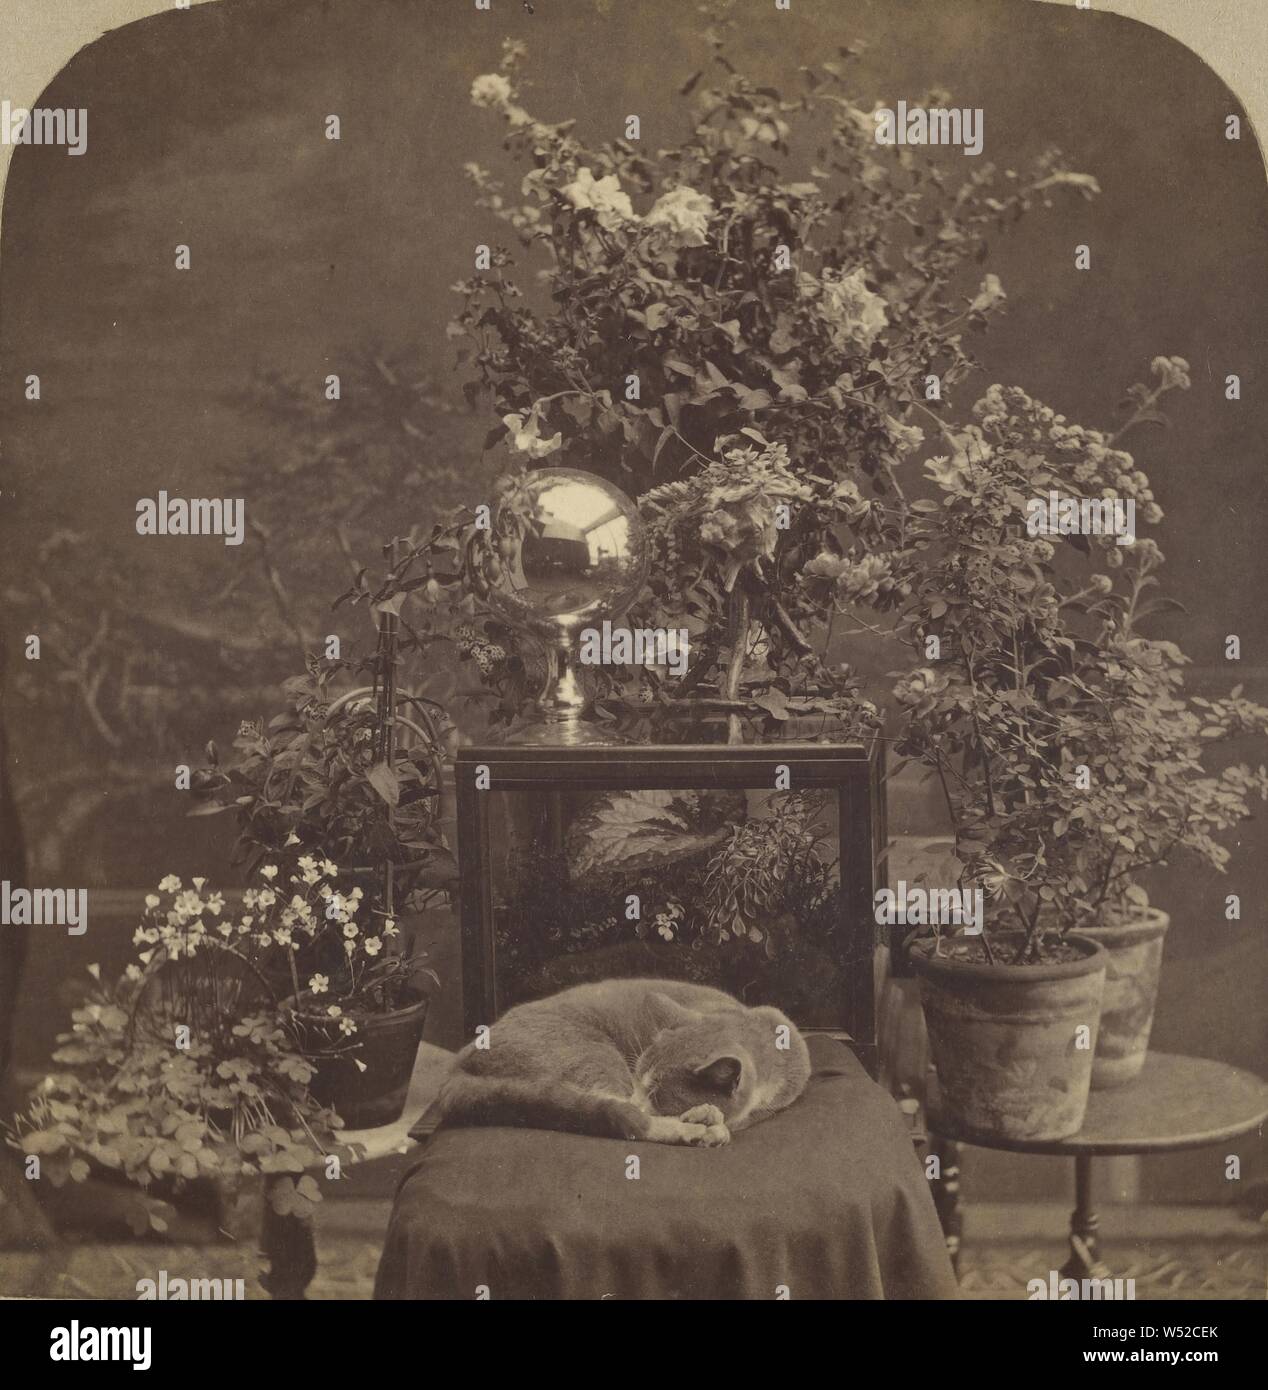 Katze schläft auf gepolsterten Stuhl, Pflanzen und Blumen im Hintergrund, G.H. Nickerson (Amerikanisch, aktive 1860s - 1880s), ca. 1875, Eiweiß silber Drucken Stockfoto